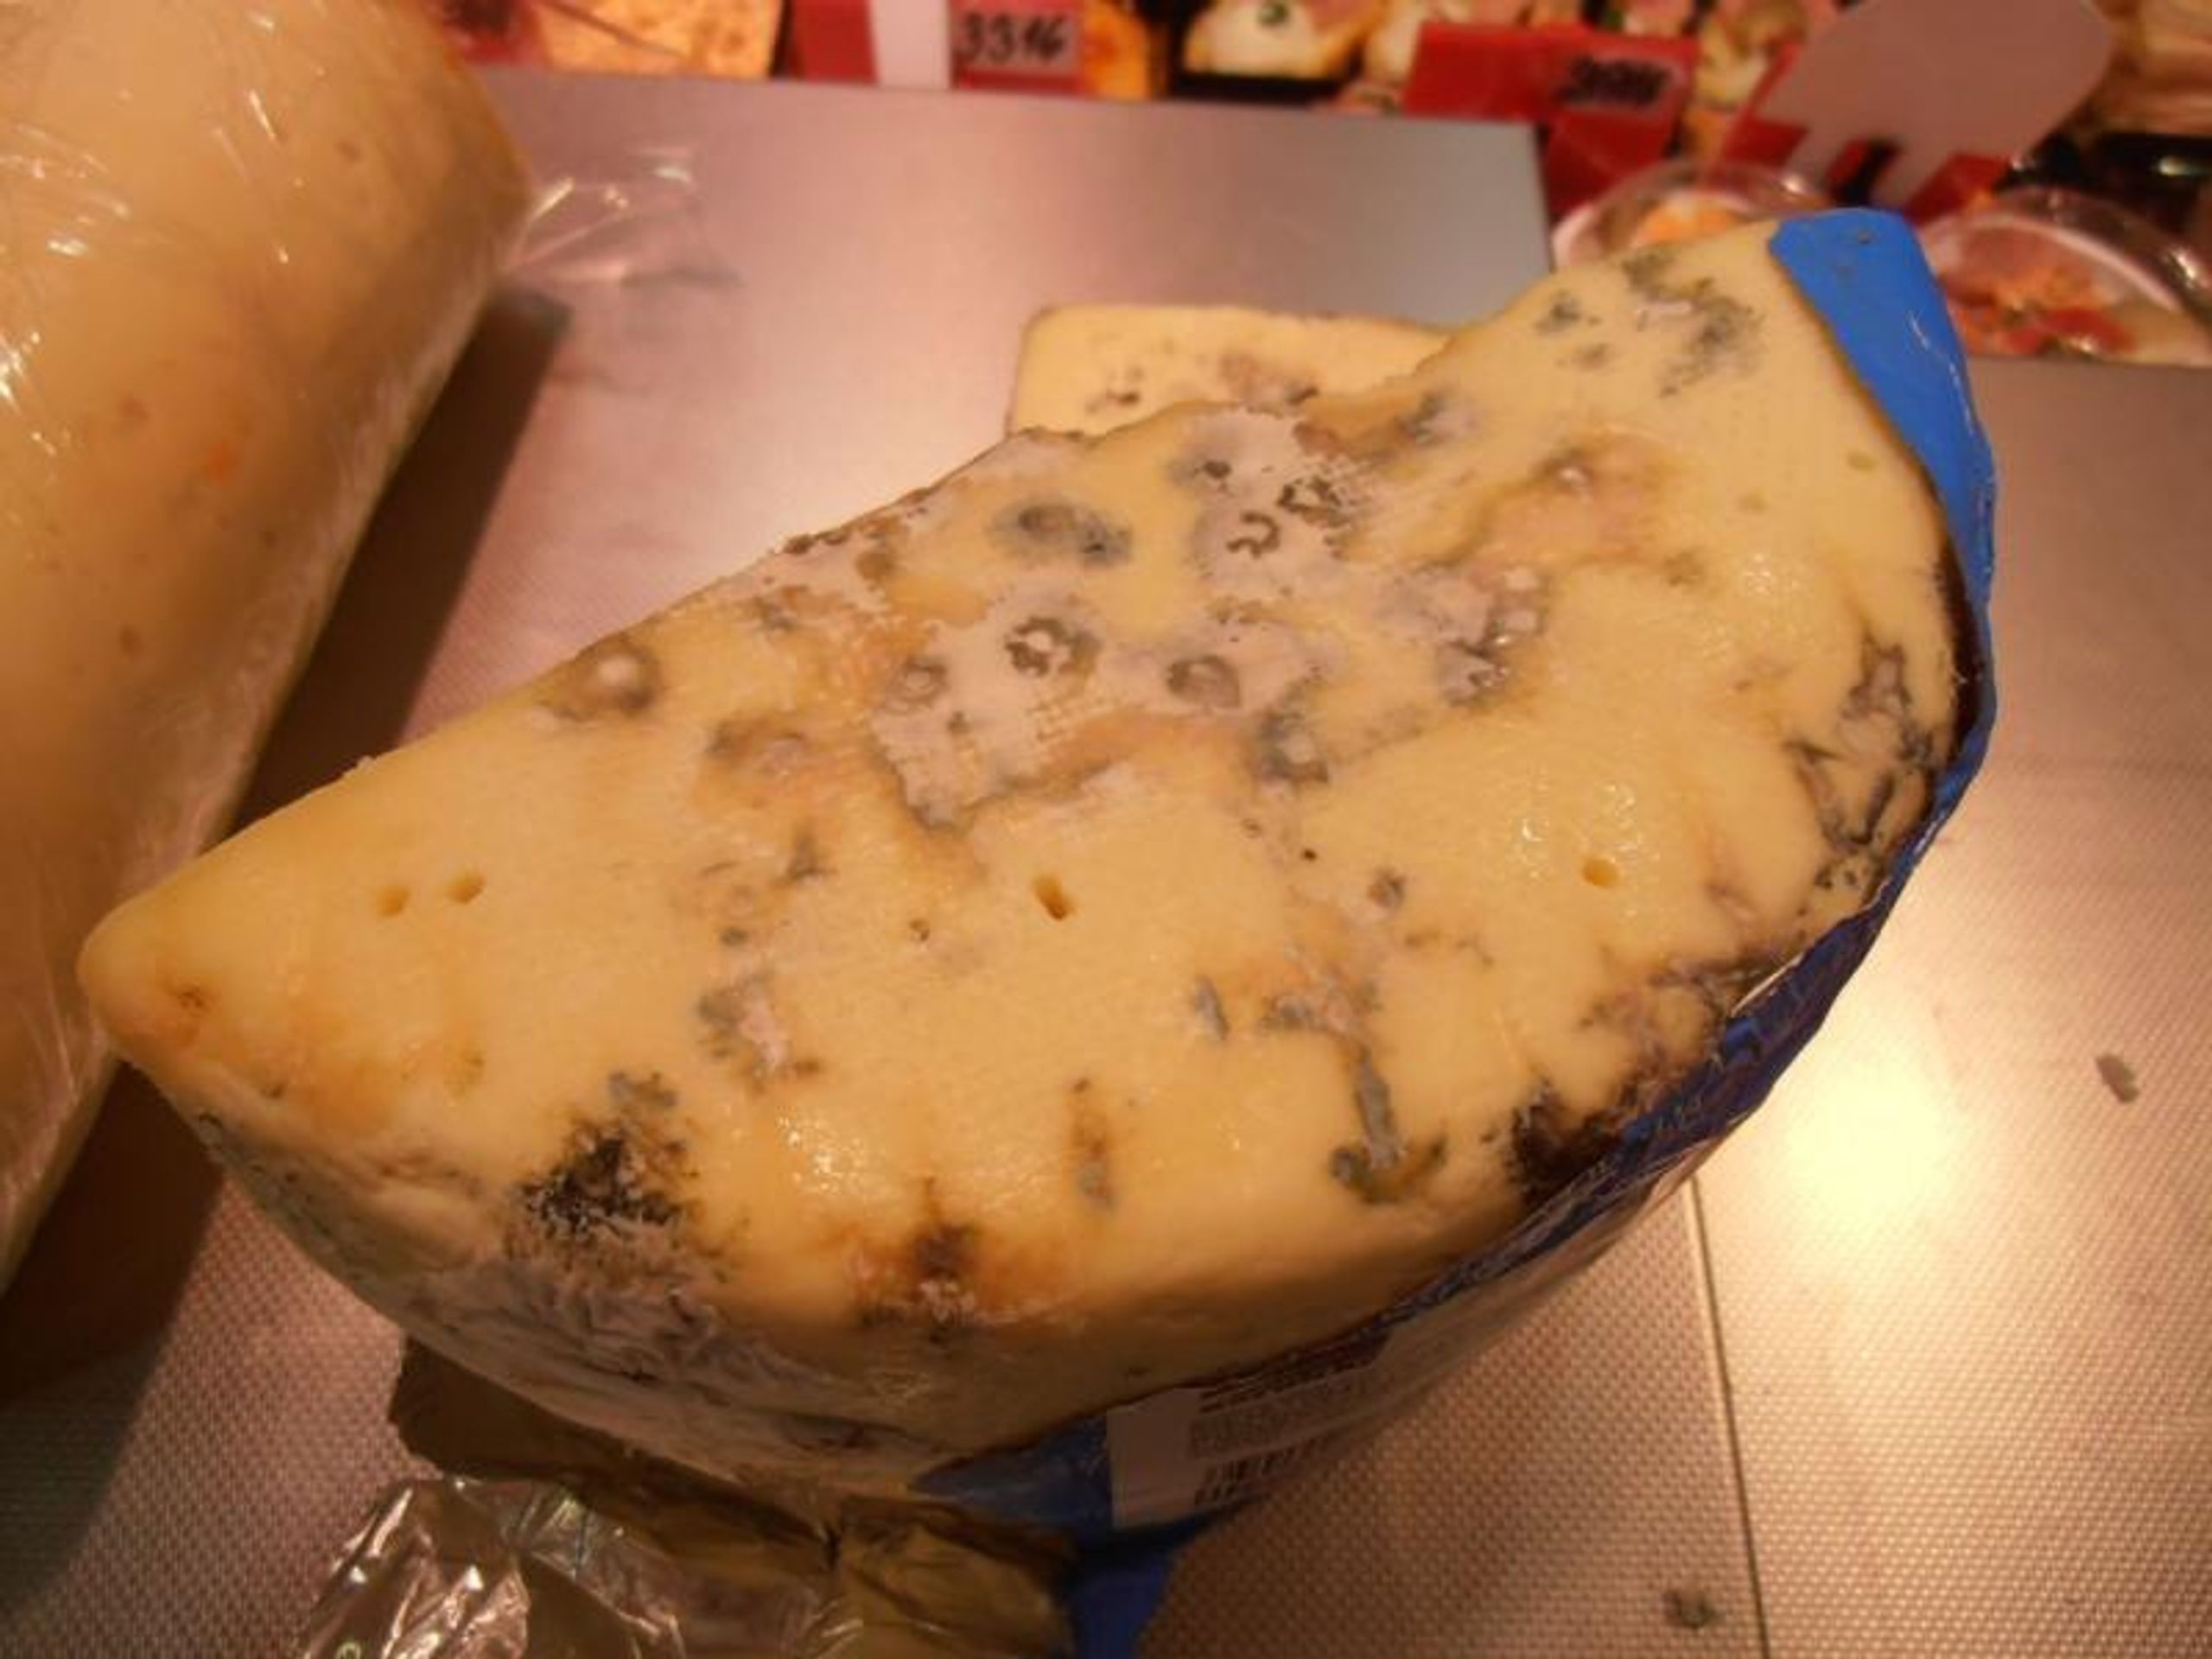 Potraviny na pranýři: Sýr Mont Noris 50 % s modrou plísní - 3 - Potraviny na pranýři: Sýr Mont Noris 50 % s modrou plísní (1/3)